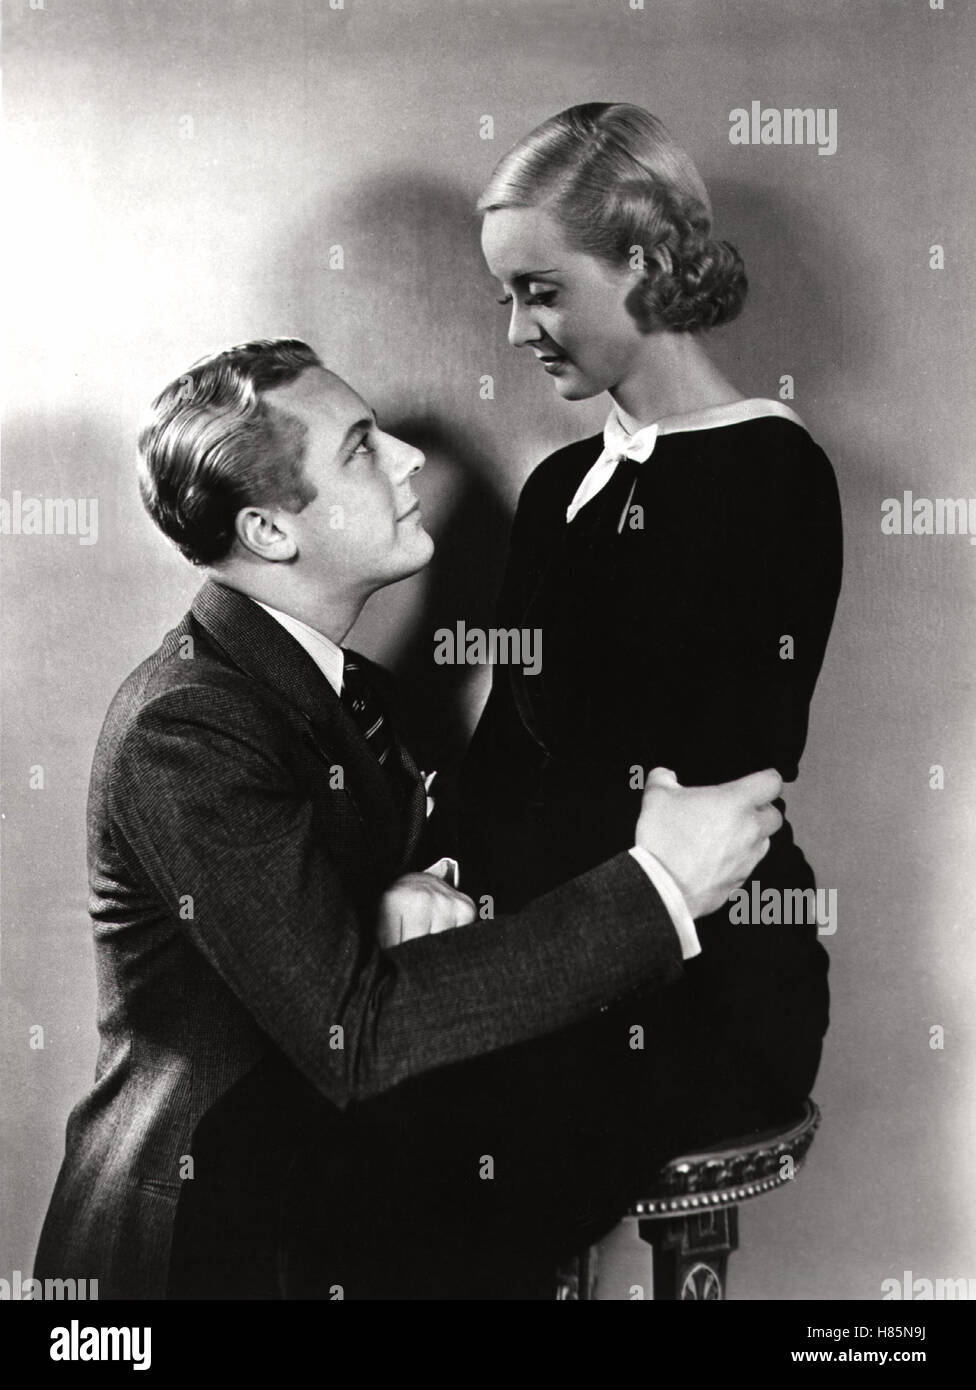 Spätere Heirat ausgeschlossen, (ex-LADY) USA 1933 s/w, Regie: Robert Florey, MONROE OWSLEY, BETTE DAVIS Stichwort: Antrag Foto Stock